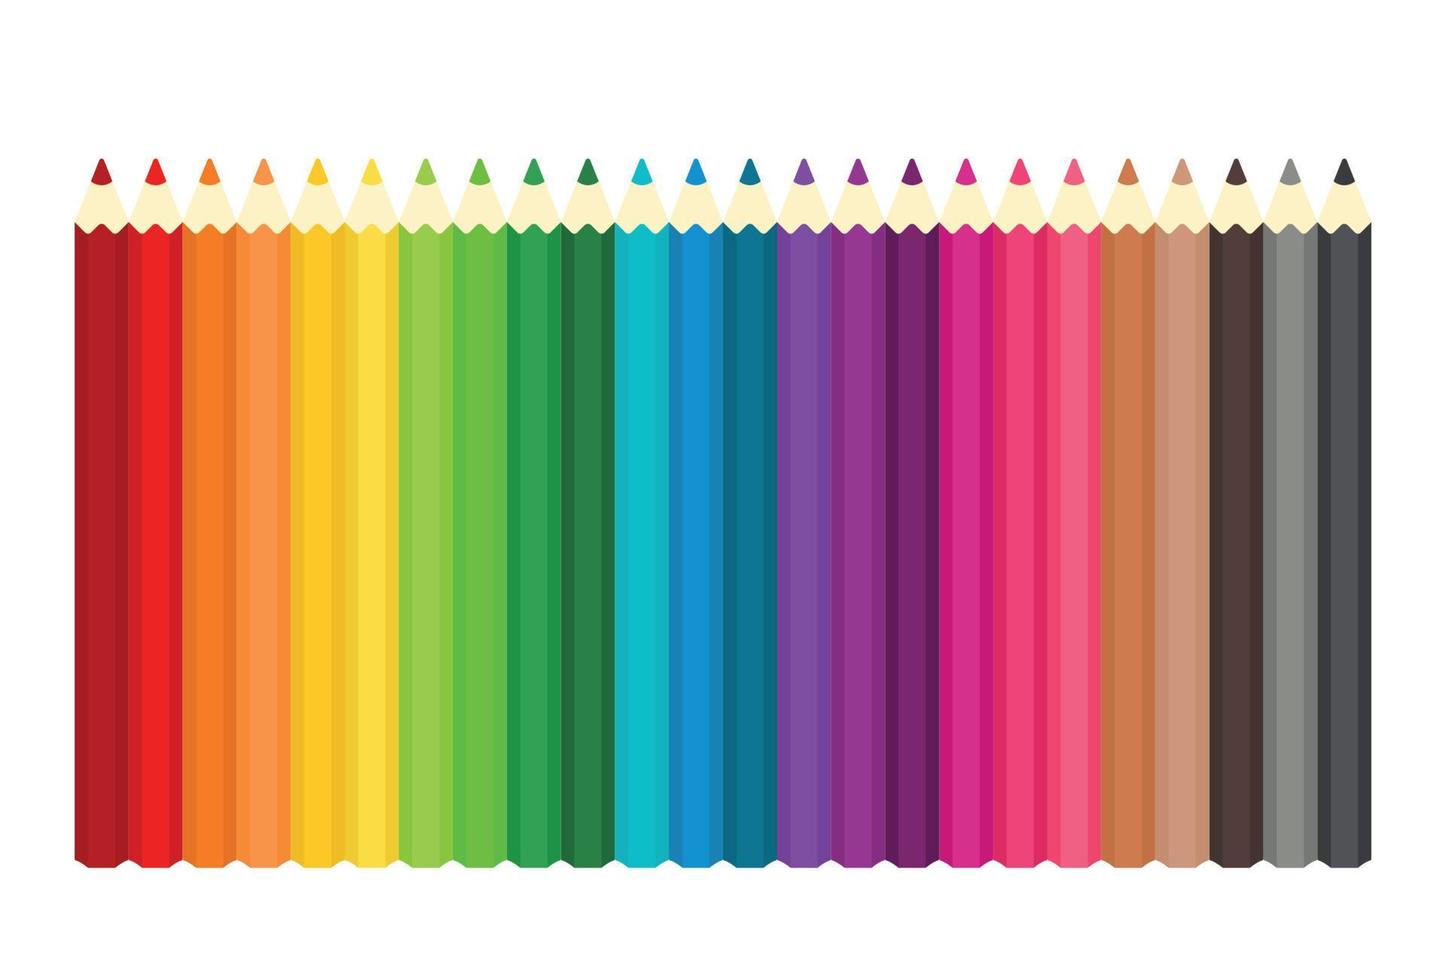 tecknad serie Färg pennor uppsättning i vit bakgrund vektor illustration  för teckning, målning, och skola brevpapper verktyg vektor element 11778969  Vektorkonst på Vecteezy